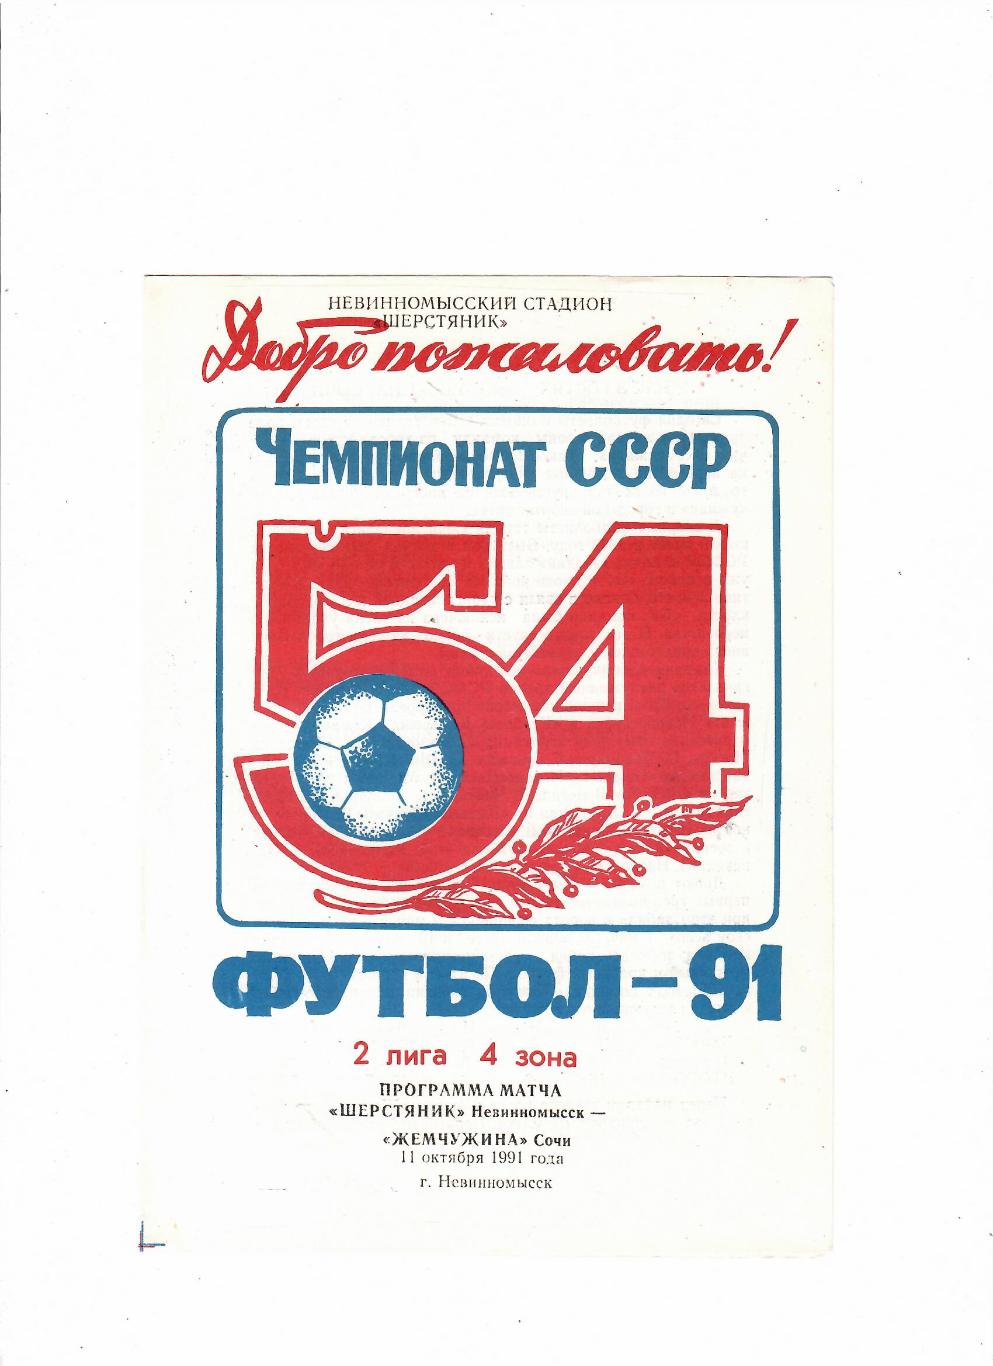 Шерстяник Невинномысск-Жемчужина Сочи 1991